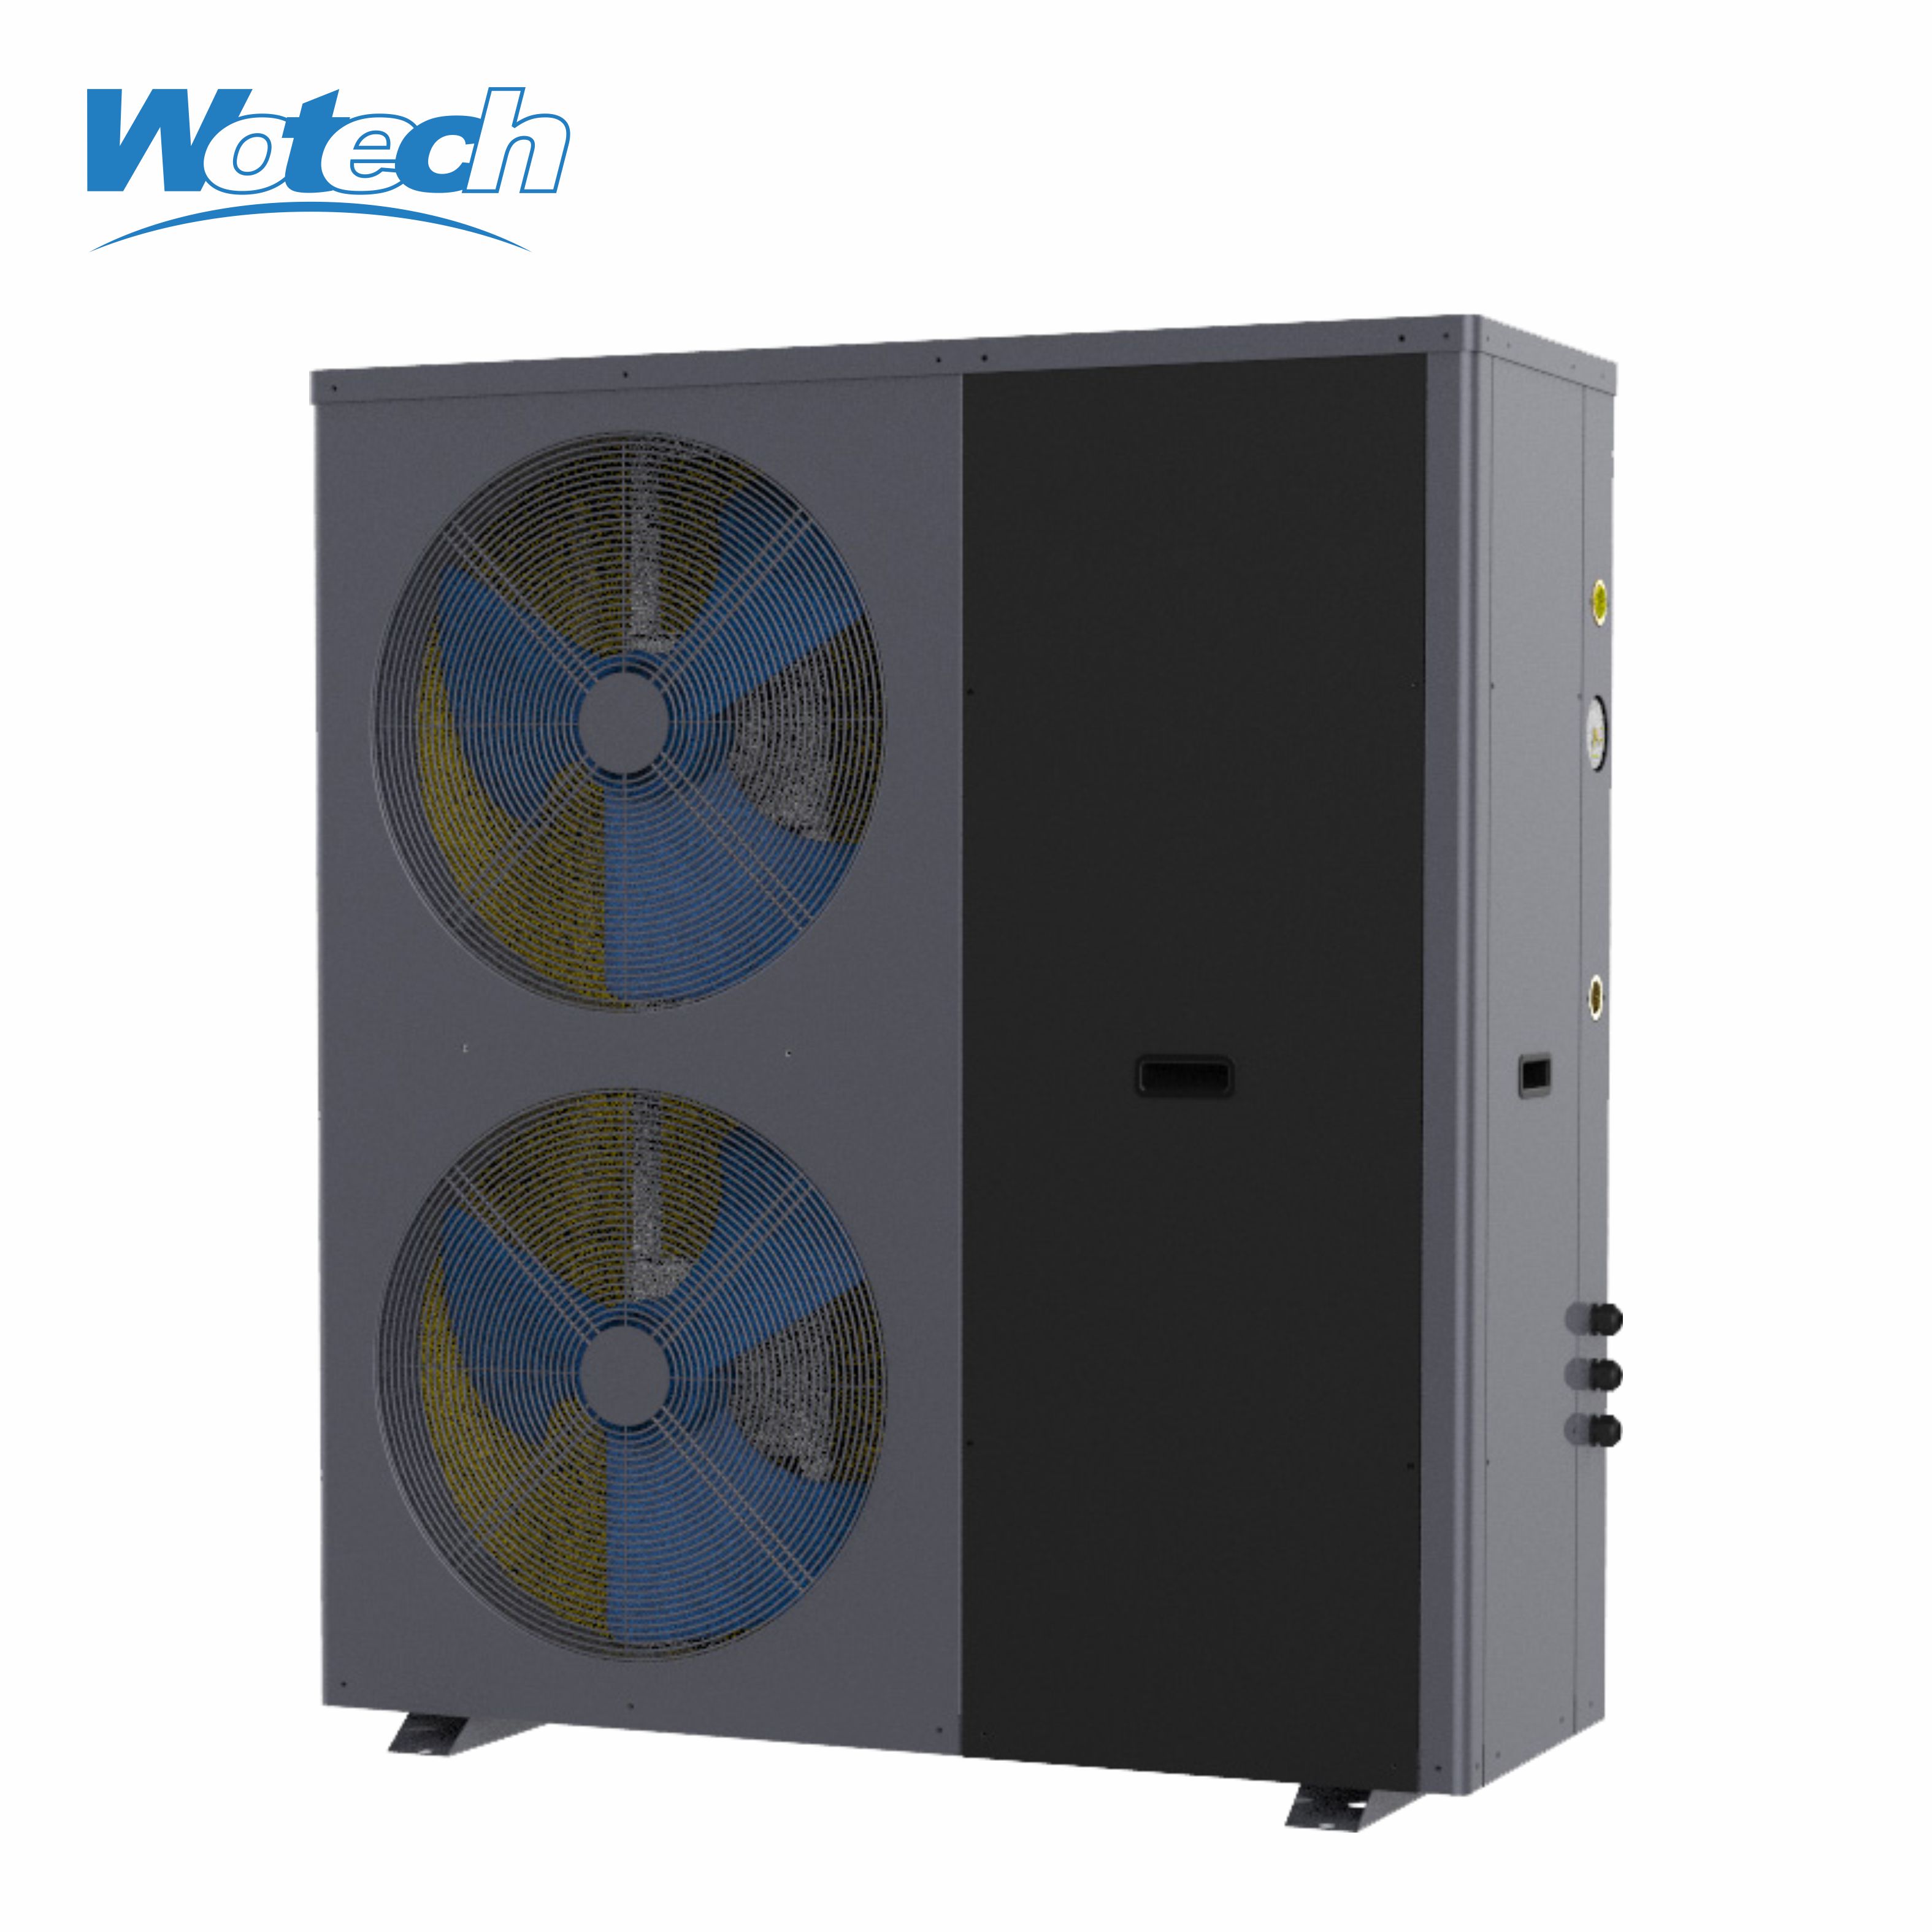 Umweltfreundliche Ein-/Aus-Monoblock-Luft-Wasser-Wärmepumpe mit R32-Kältemittel